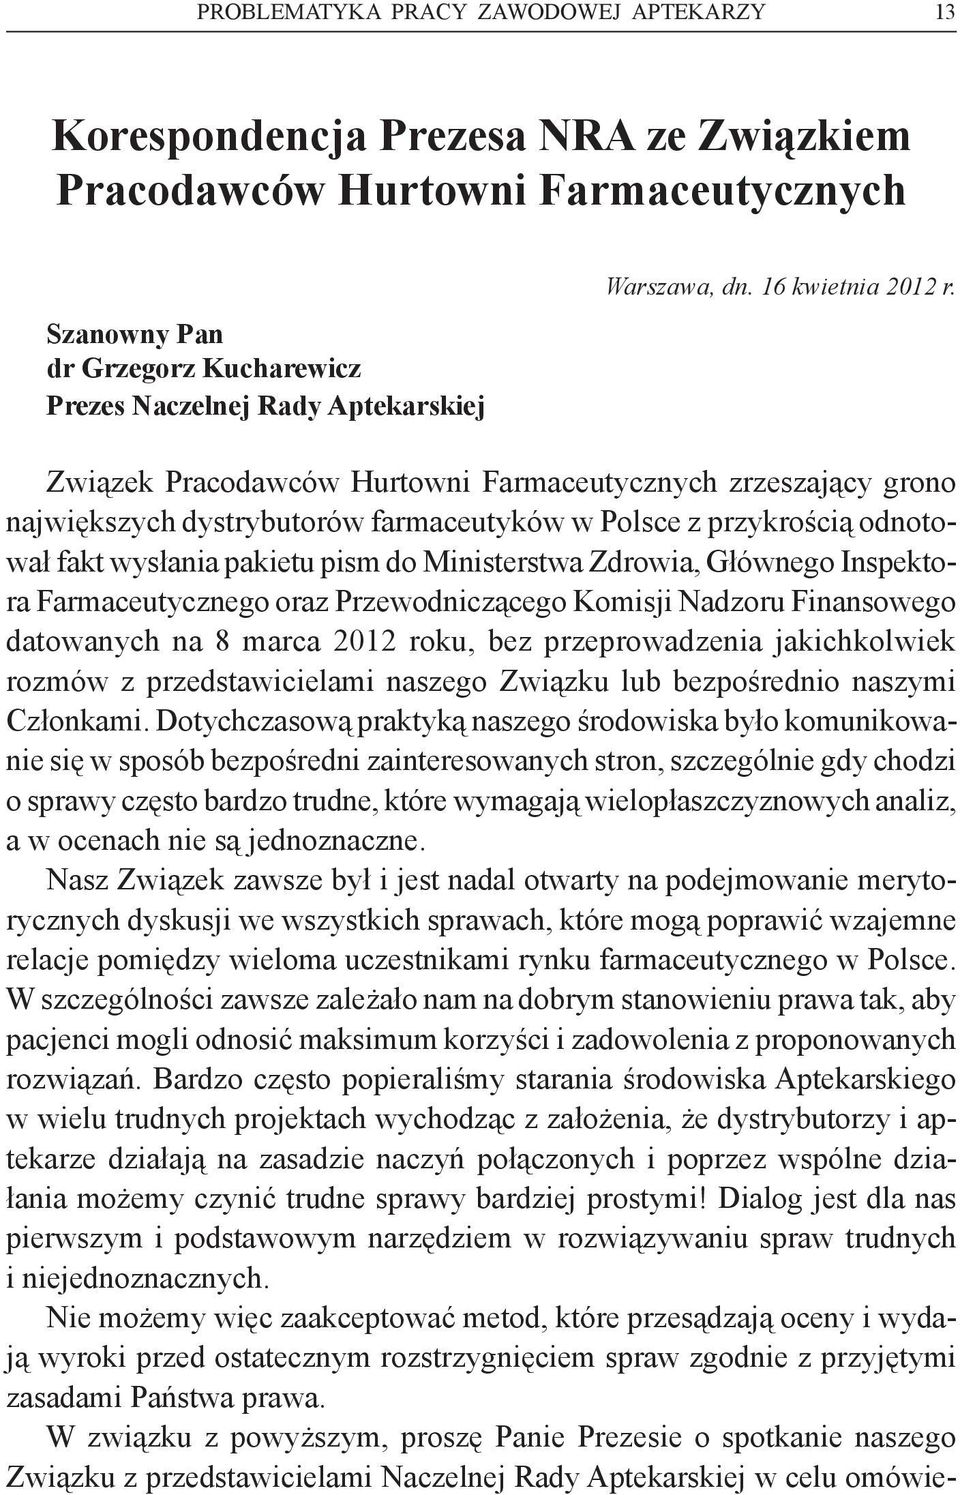 Związek Pracodawców Hurtowni Farmaceutycznych zrzeszający grono największych dystrybutorów farmaceutyków w Polsce z przykrością odnotował fakt wysłania pakietu pism do Ministerstwa Zdrowia, Głównego